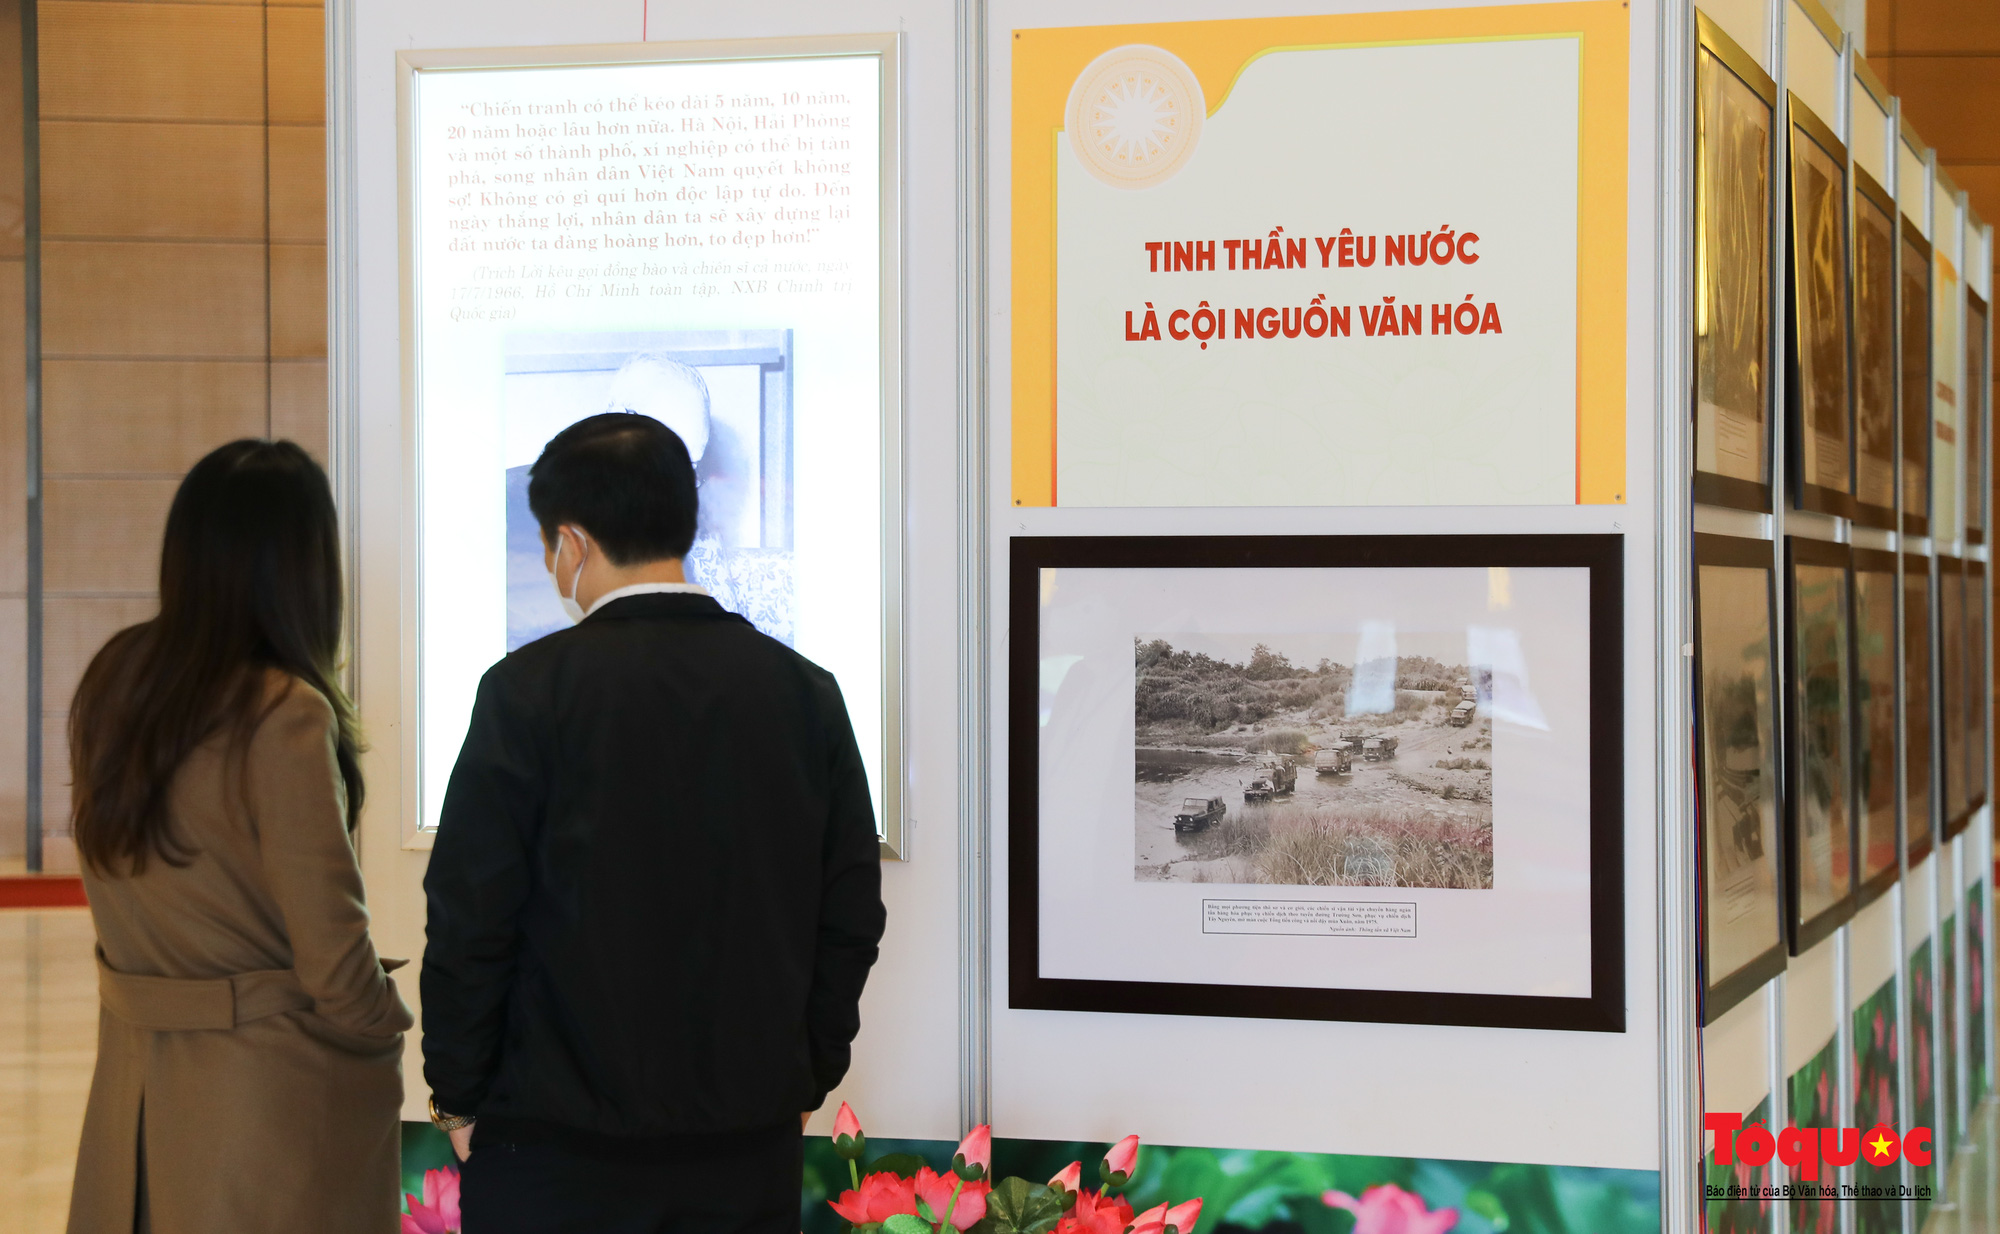 Triển lãm “Văn hóa soi đường cho quốc dân đi” trưng bày 320 tác phẩm ảnh nghệ thuật tiêu biểu - Ảnh 15.